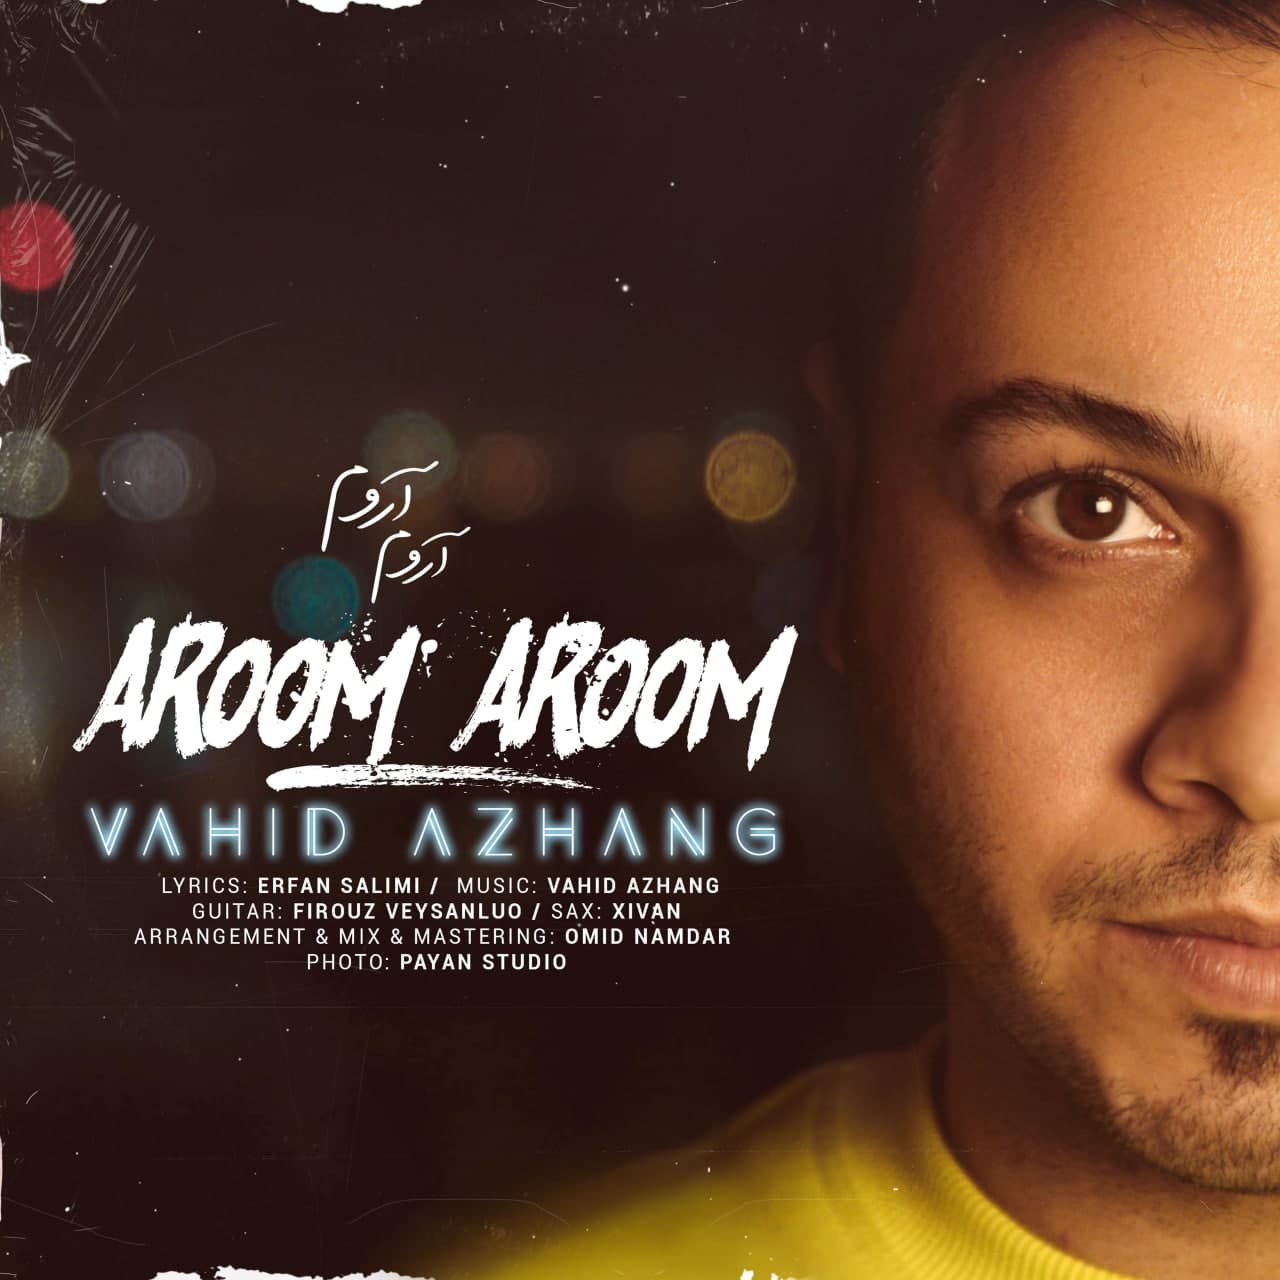 Vahid Azhang - Aroom Aroom